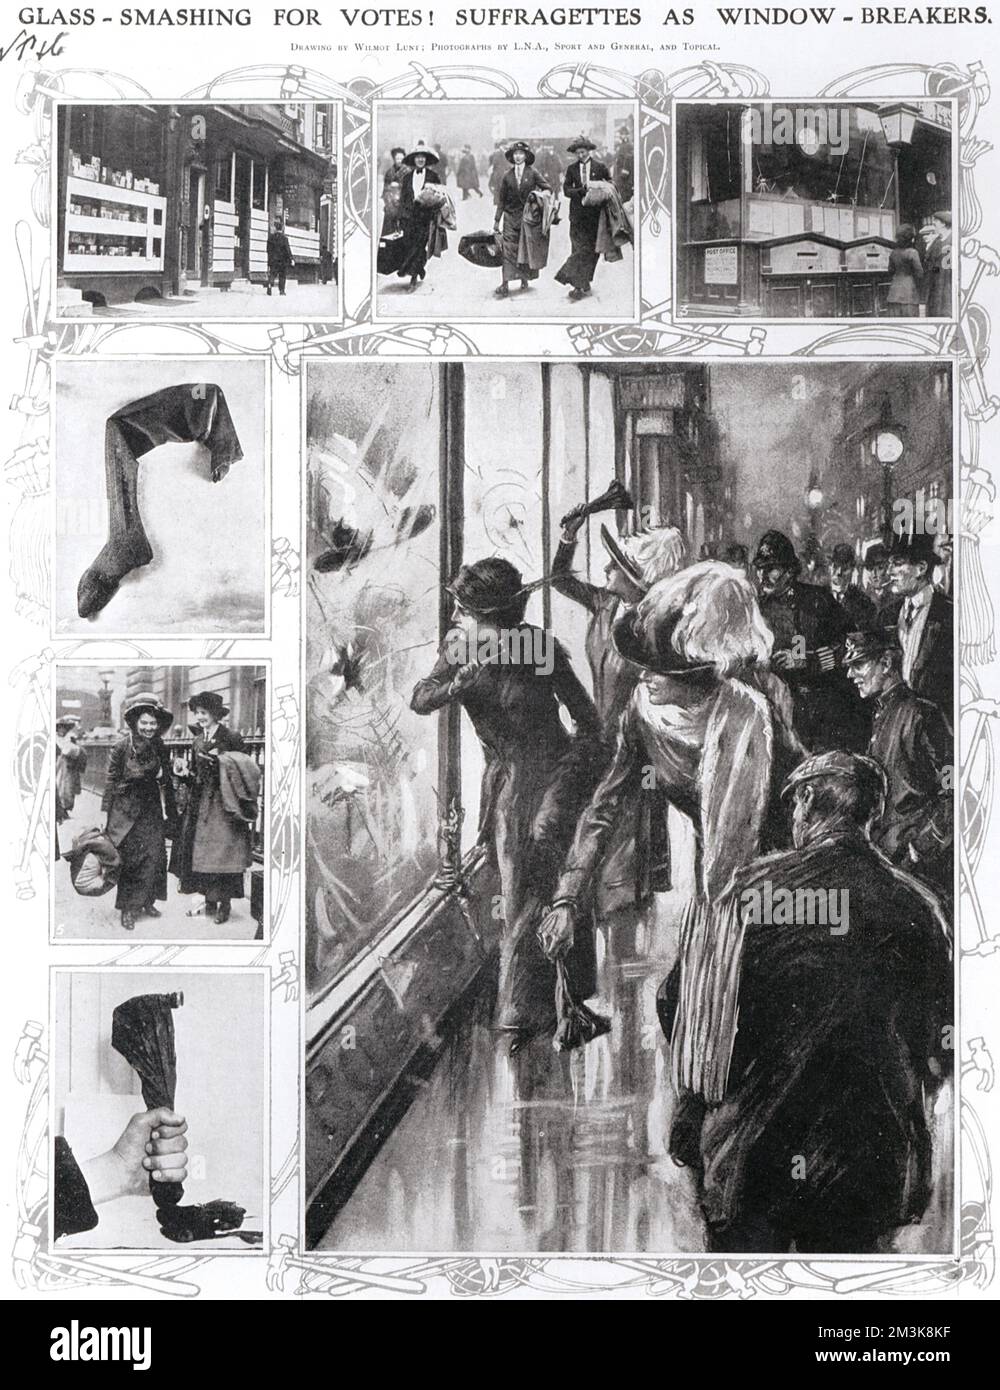 Des suffragettes brisent les fenêtres pour protester contre le droit de vote. Date: 1912 Banque D'Images